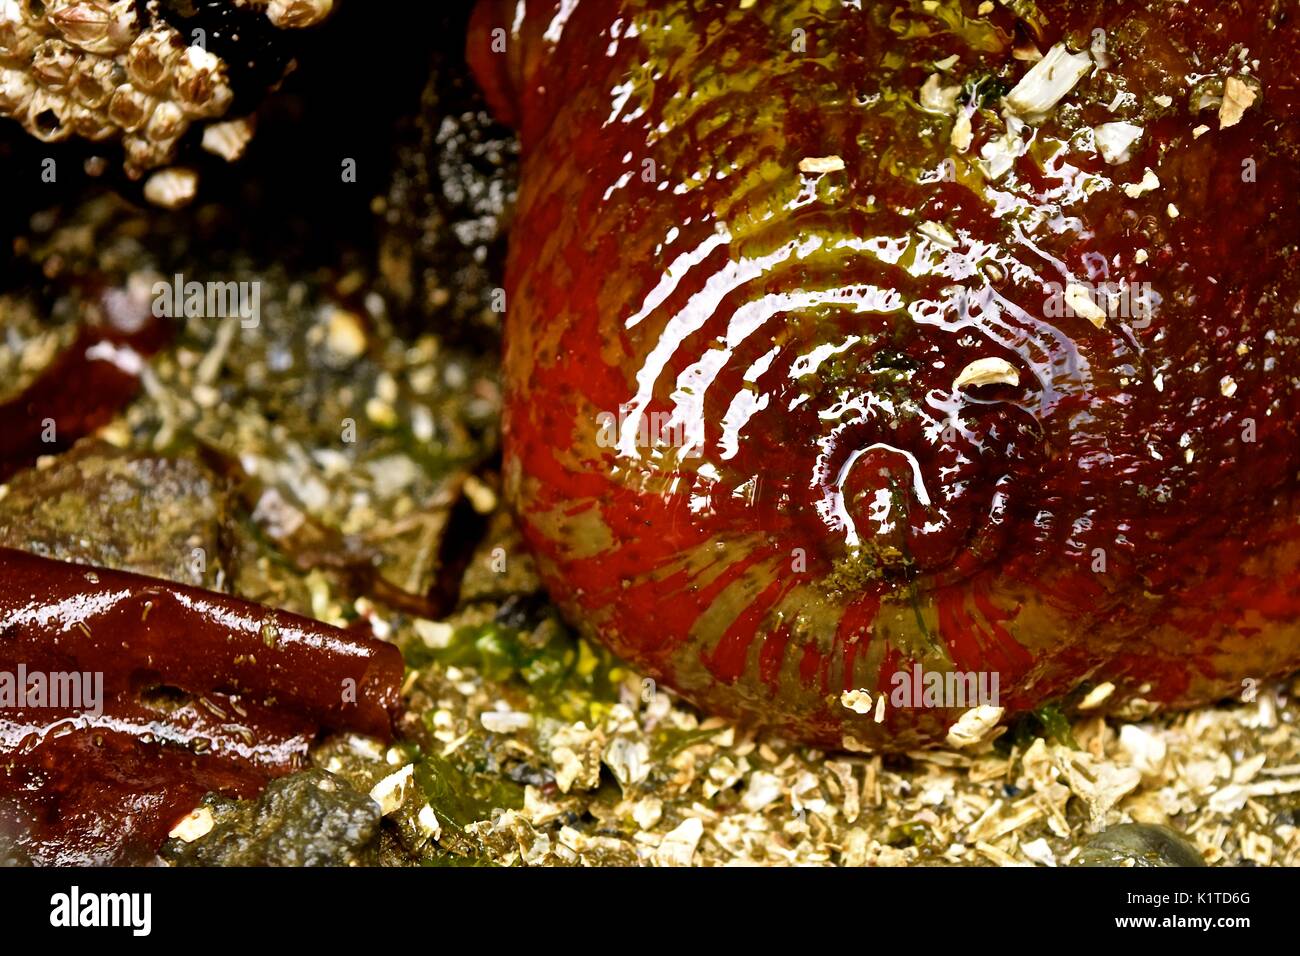 Marea baja en Puget Sound en el estado de Washington revela muchos animales marinos que suelen habitar en los fondos marinos, como esta anémona de mar. Foto de stock